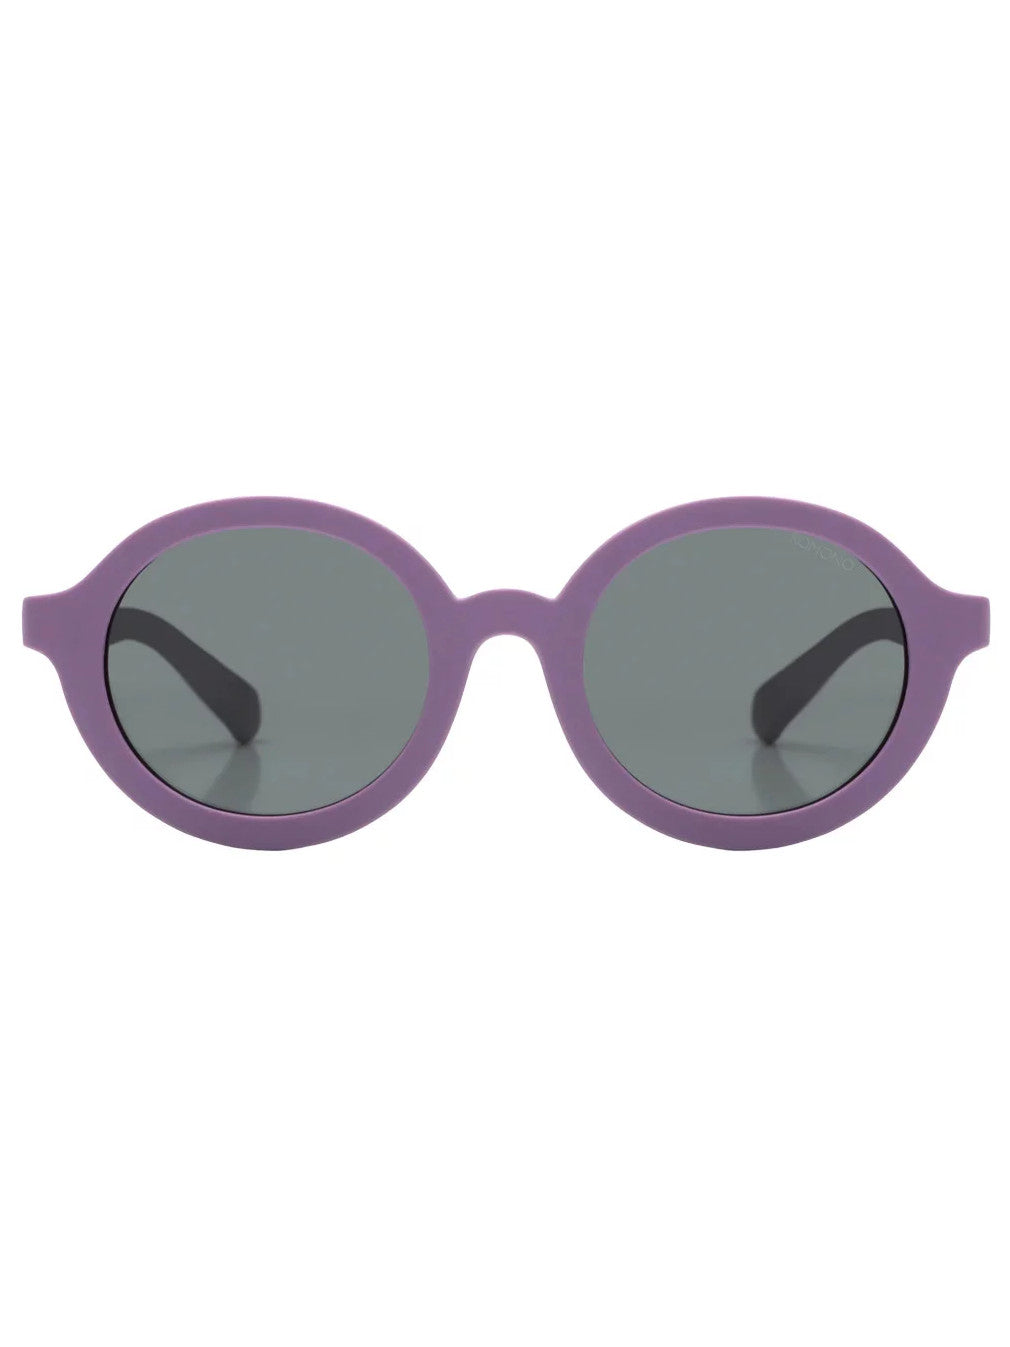 Lou Kiddos Sunglasses - Children's sunglasses